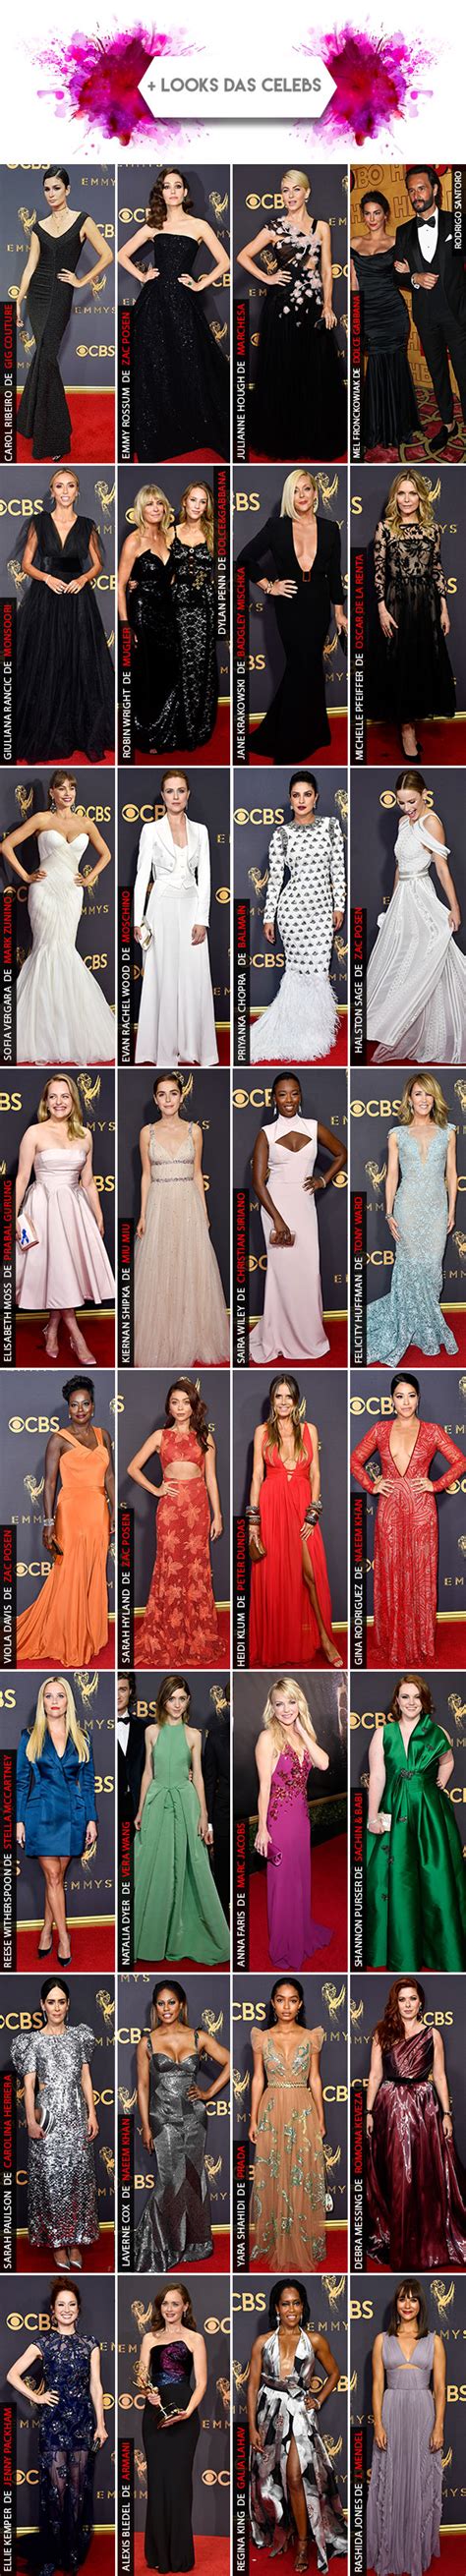 Emmy 2017 Os Looks Que Se Destacaram No Red Carpet E Mais Garotas